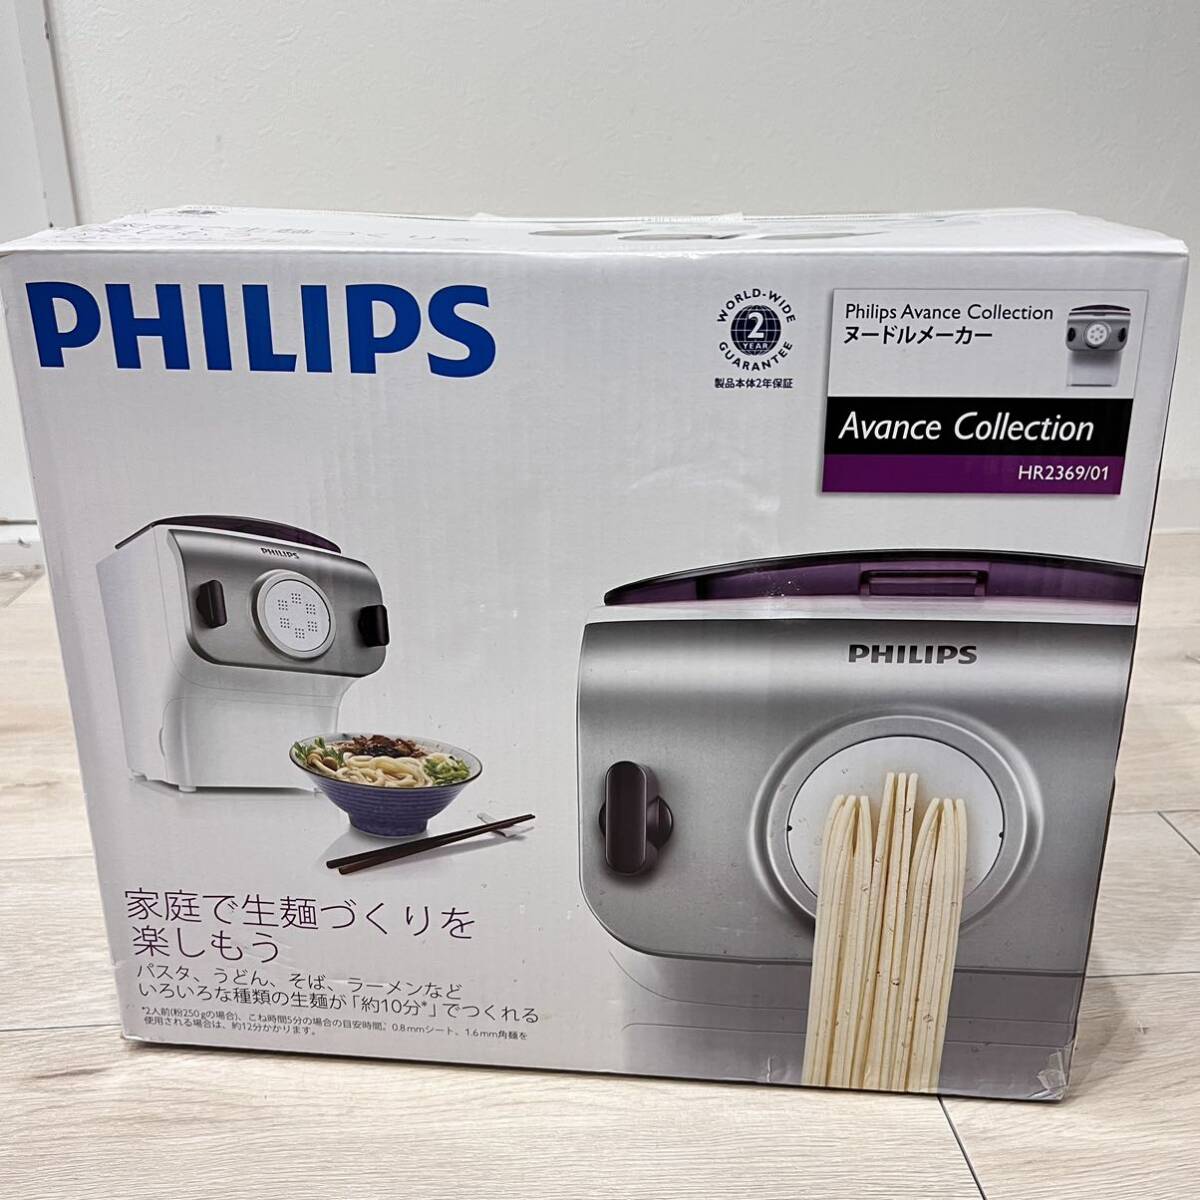 フィリップス 家庭用製麺機 ヌードルメーカー HR2369/01 PHILIPS 製麺機 _画像1